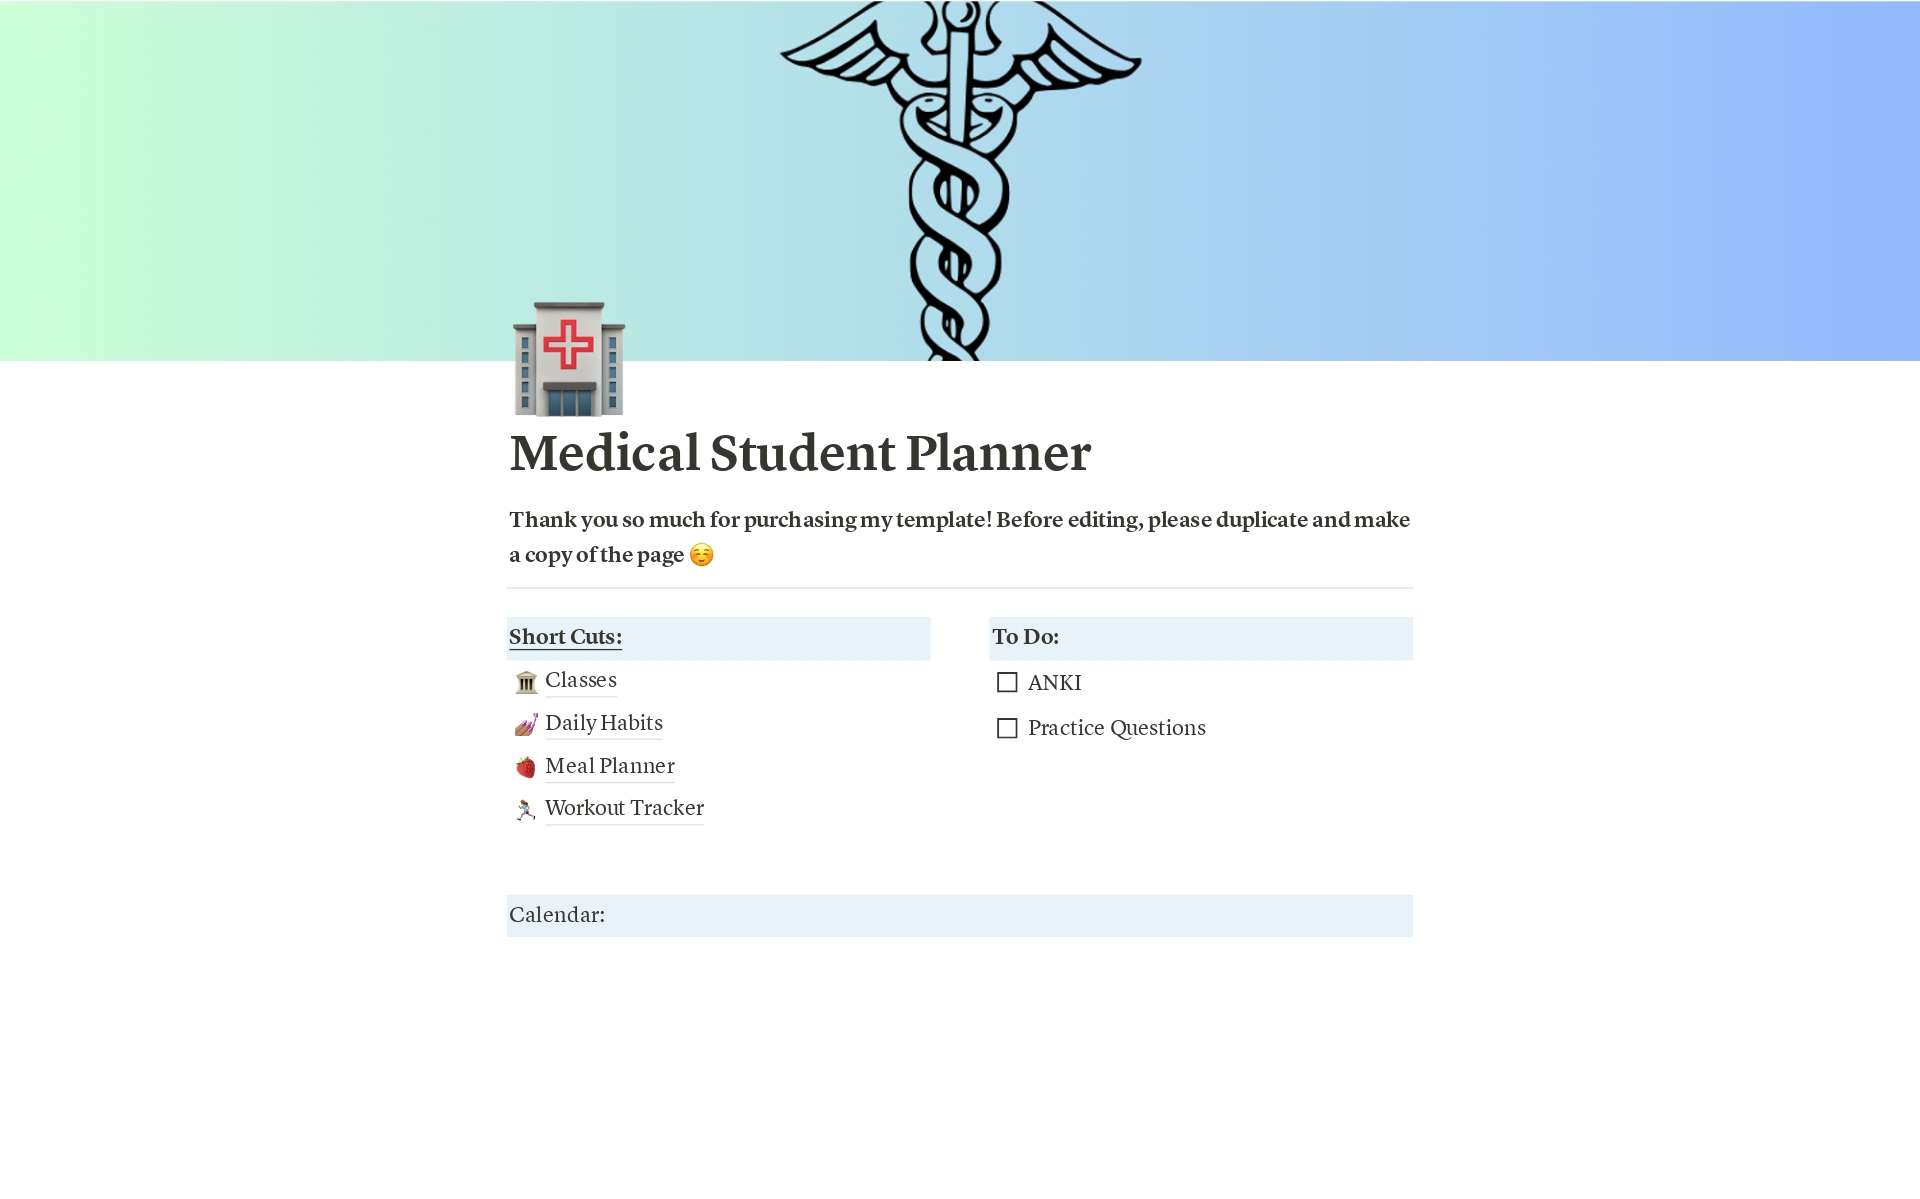 Aperçu du modèle de Medical Student Planner